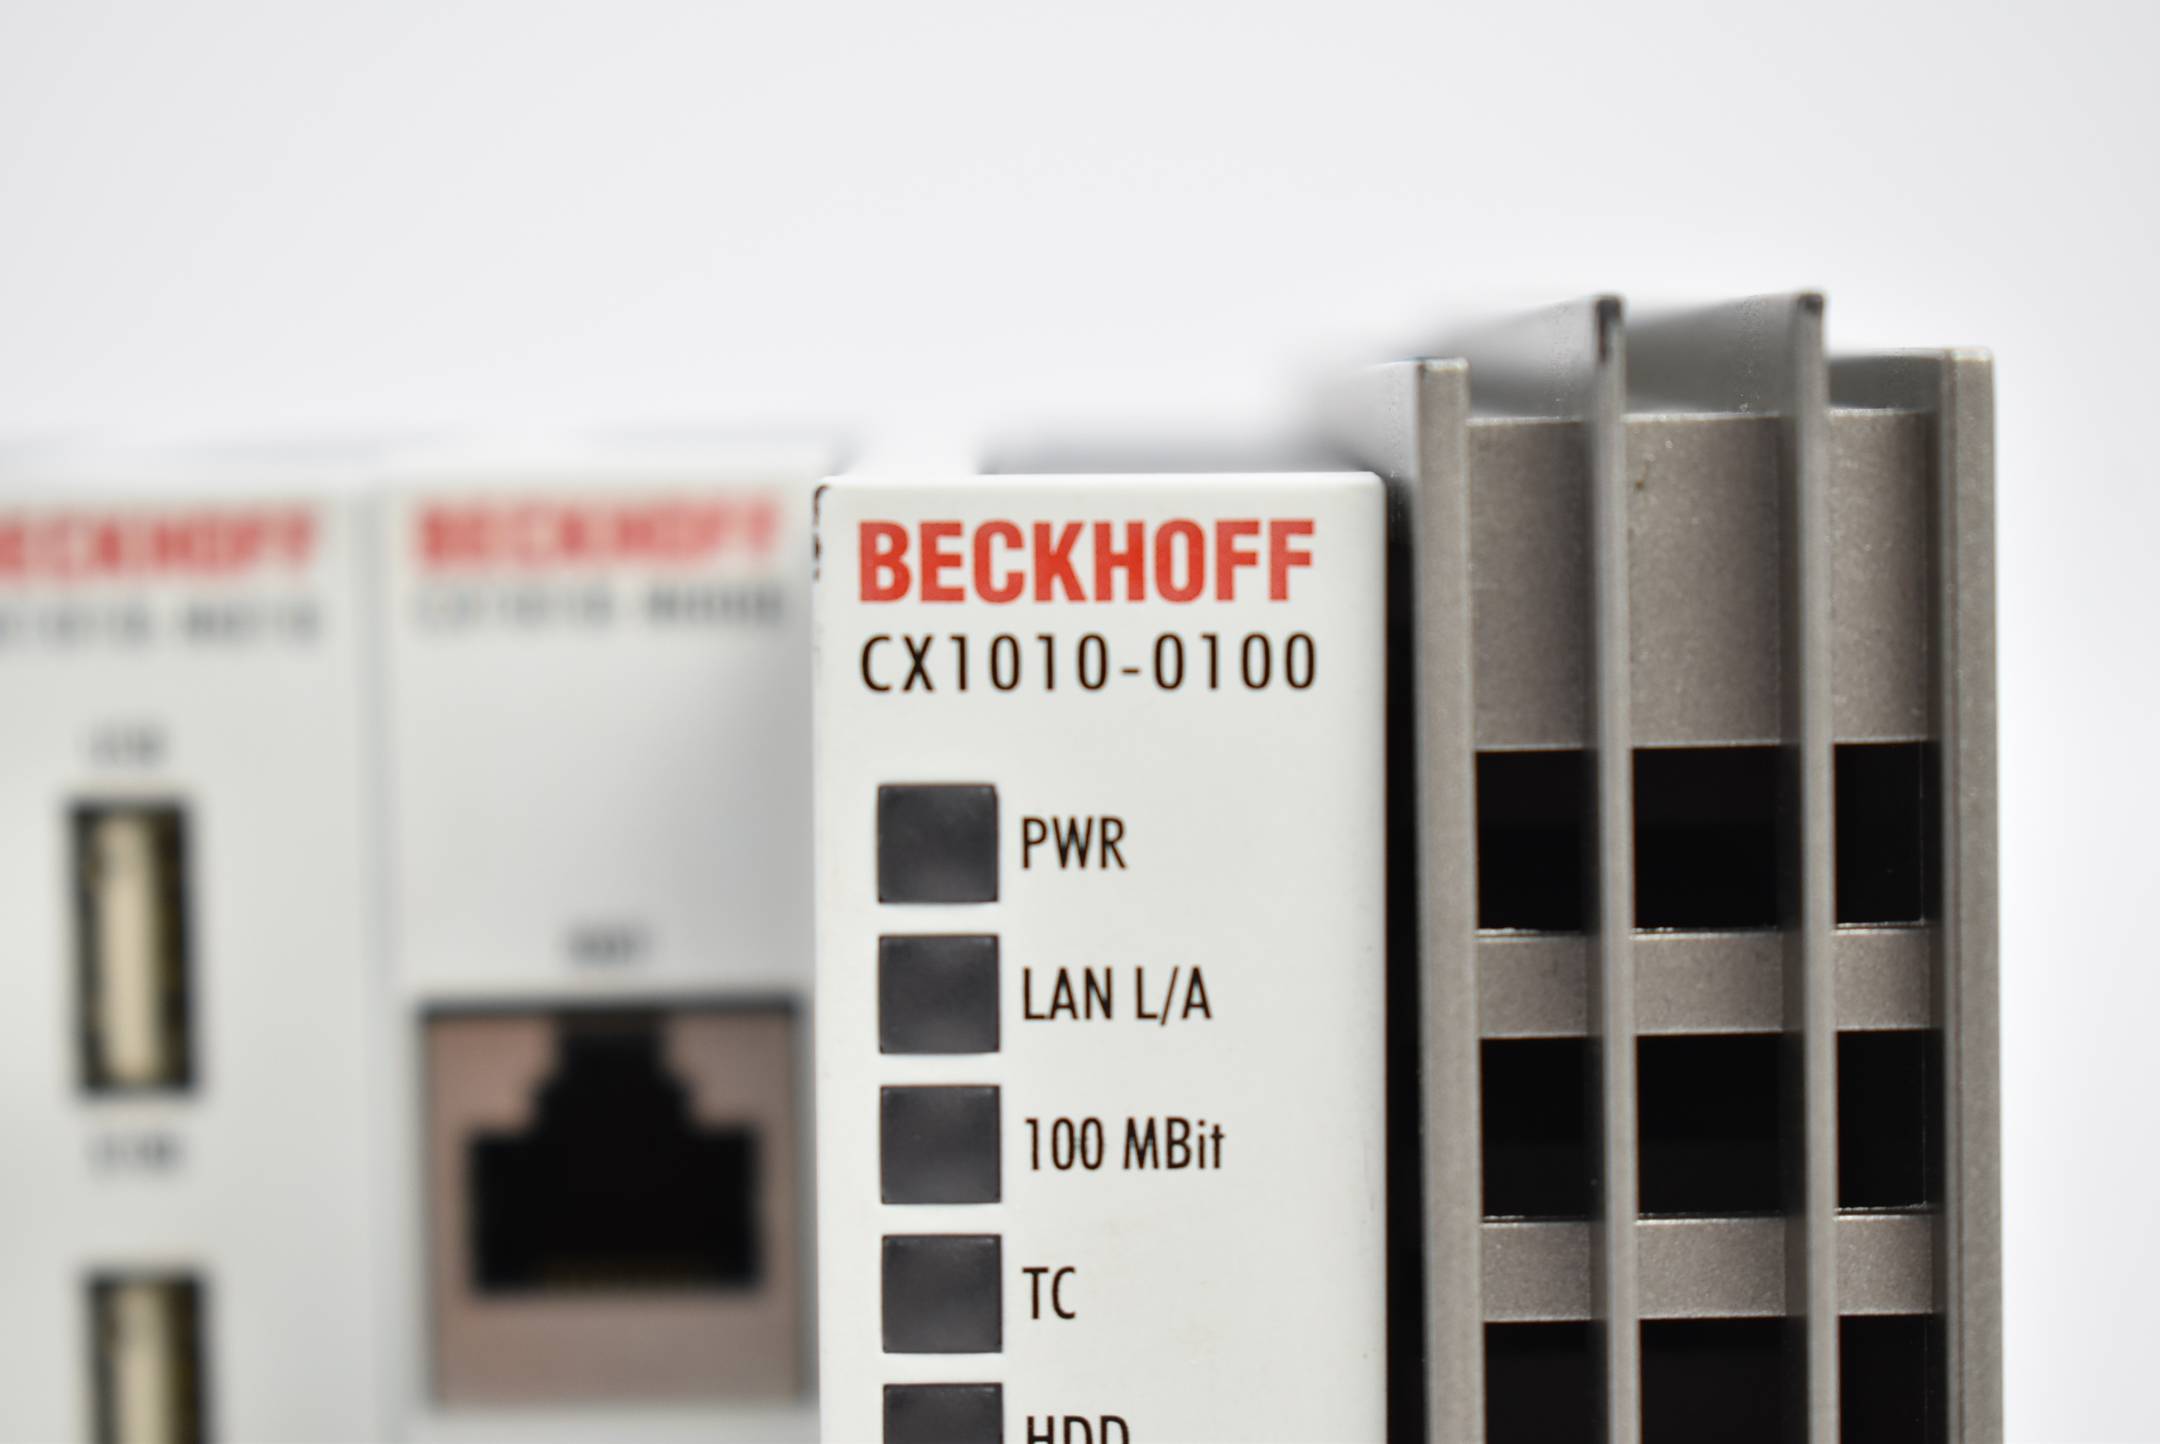 Beckhoff CX1010-0100 + CX1010-N000 + CX1010-N010 + CX1010-N030